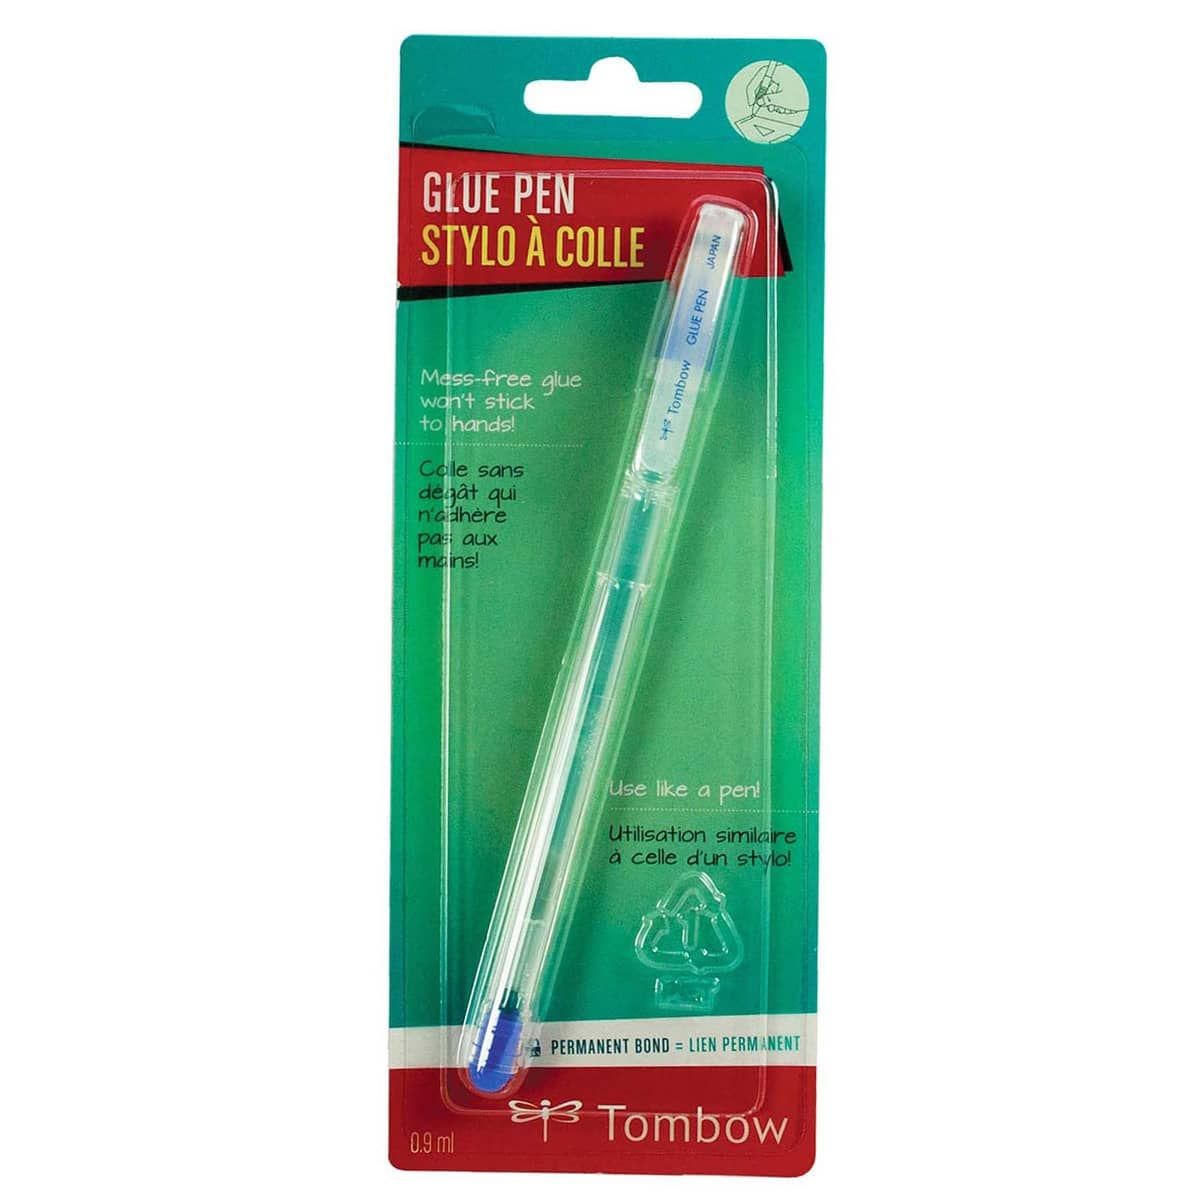 Tombow MONO Glue Pen